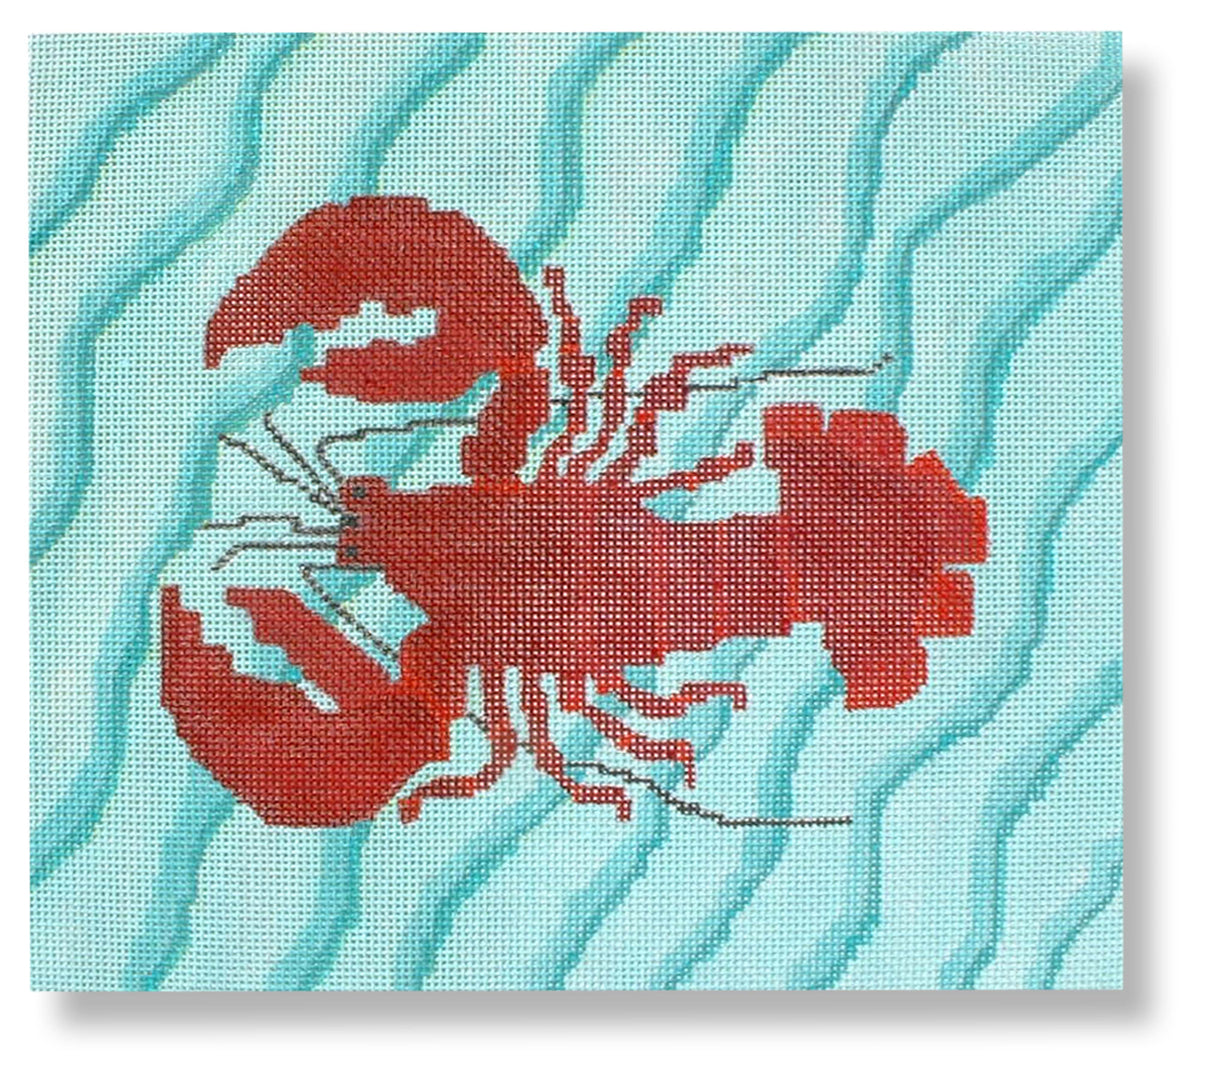 DK-PL31 - Lobster